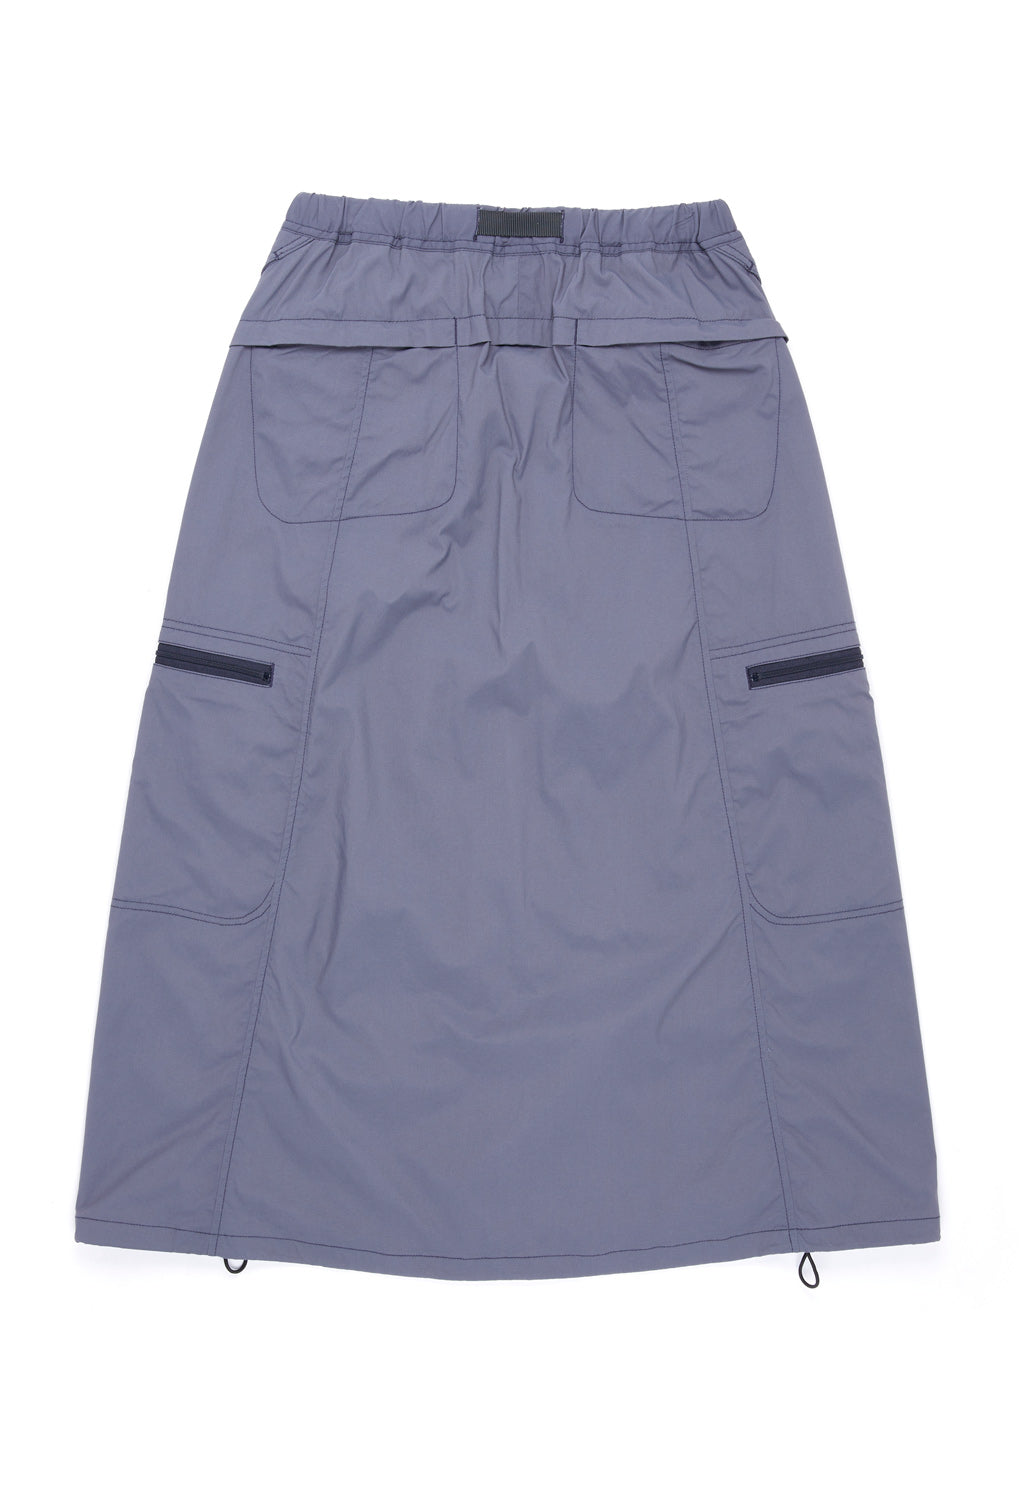 Gramicci Women's Softshell Nylon Skirt - Navy